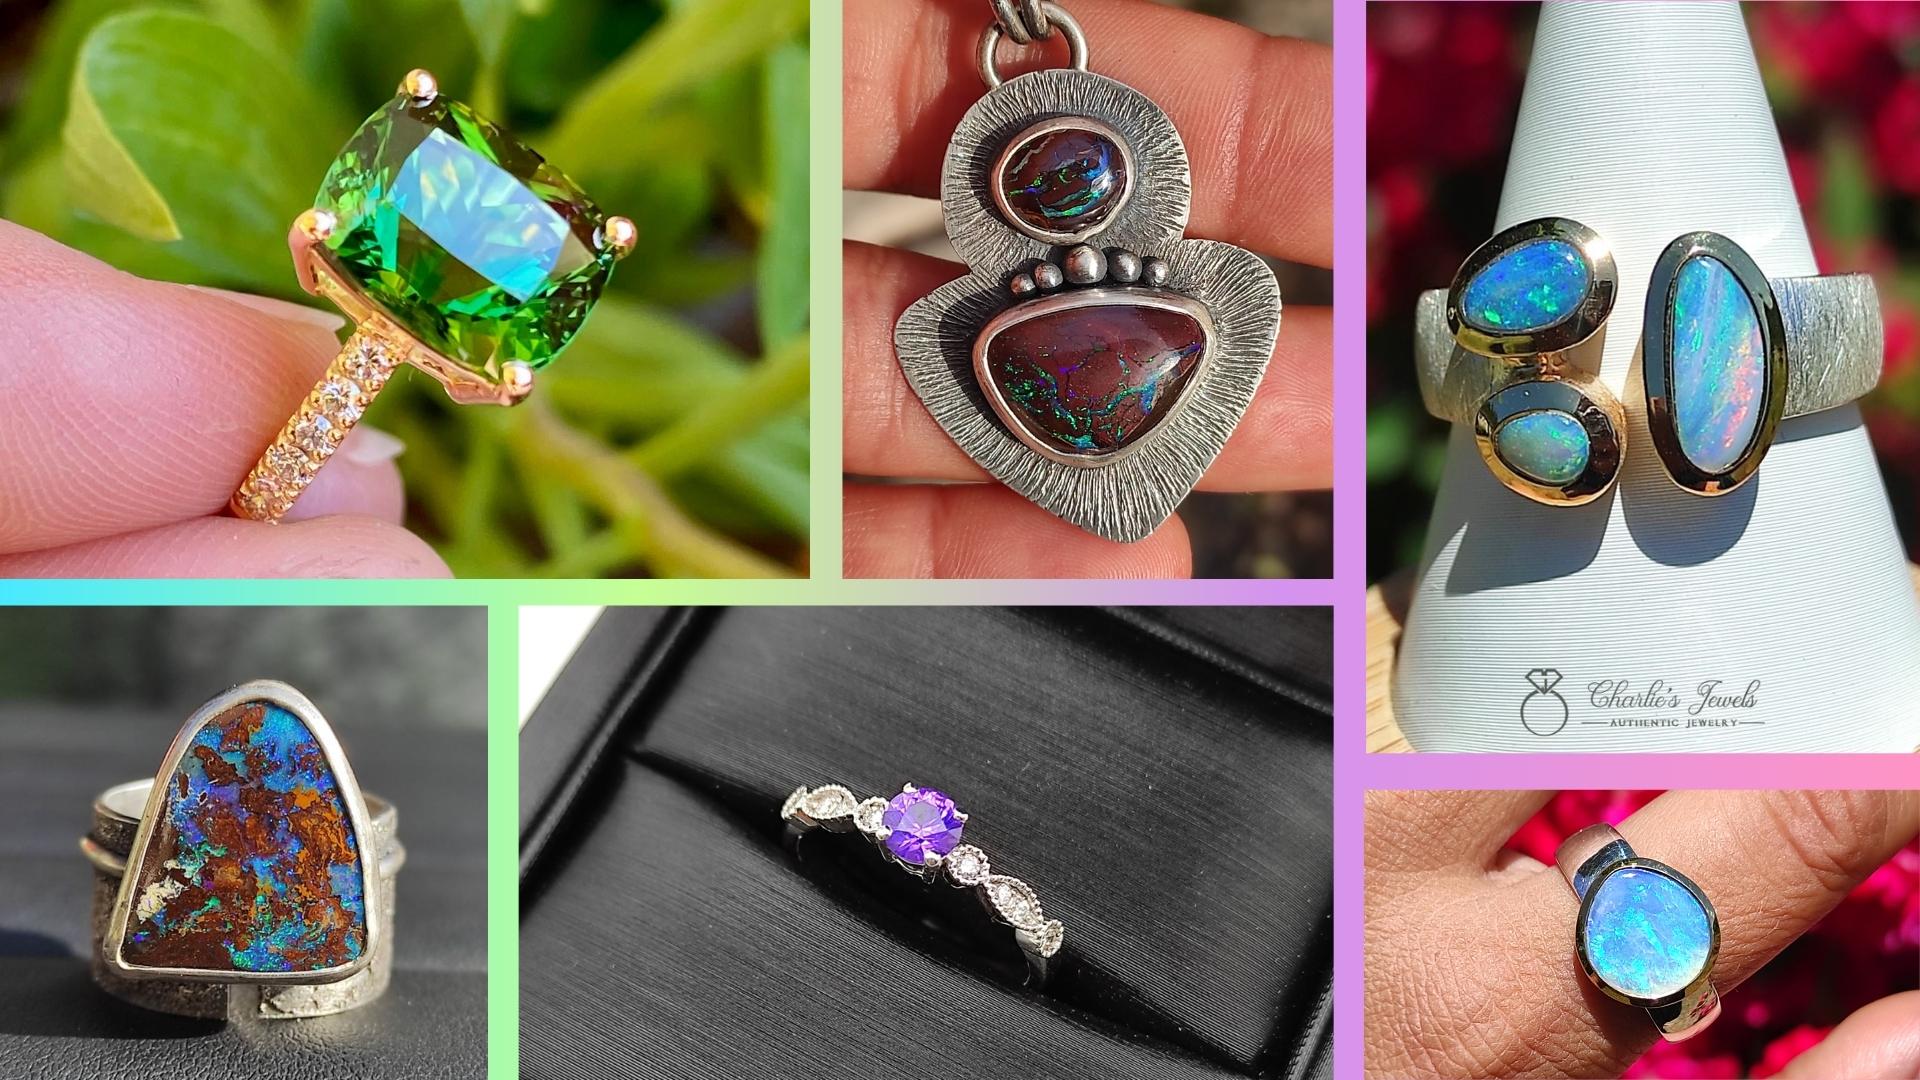 Gemmes et Opales de Charlie’s Gems montés en bijoux et métaux précieux par des créateurs français pour la collection Charlie’s Jewels